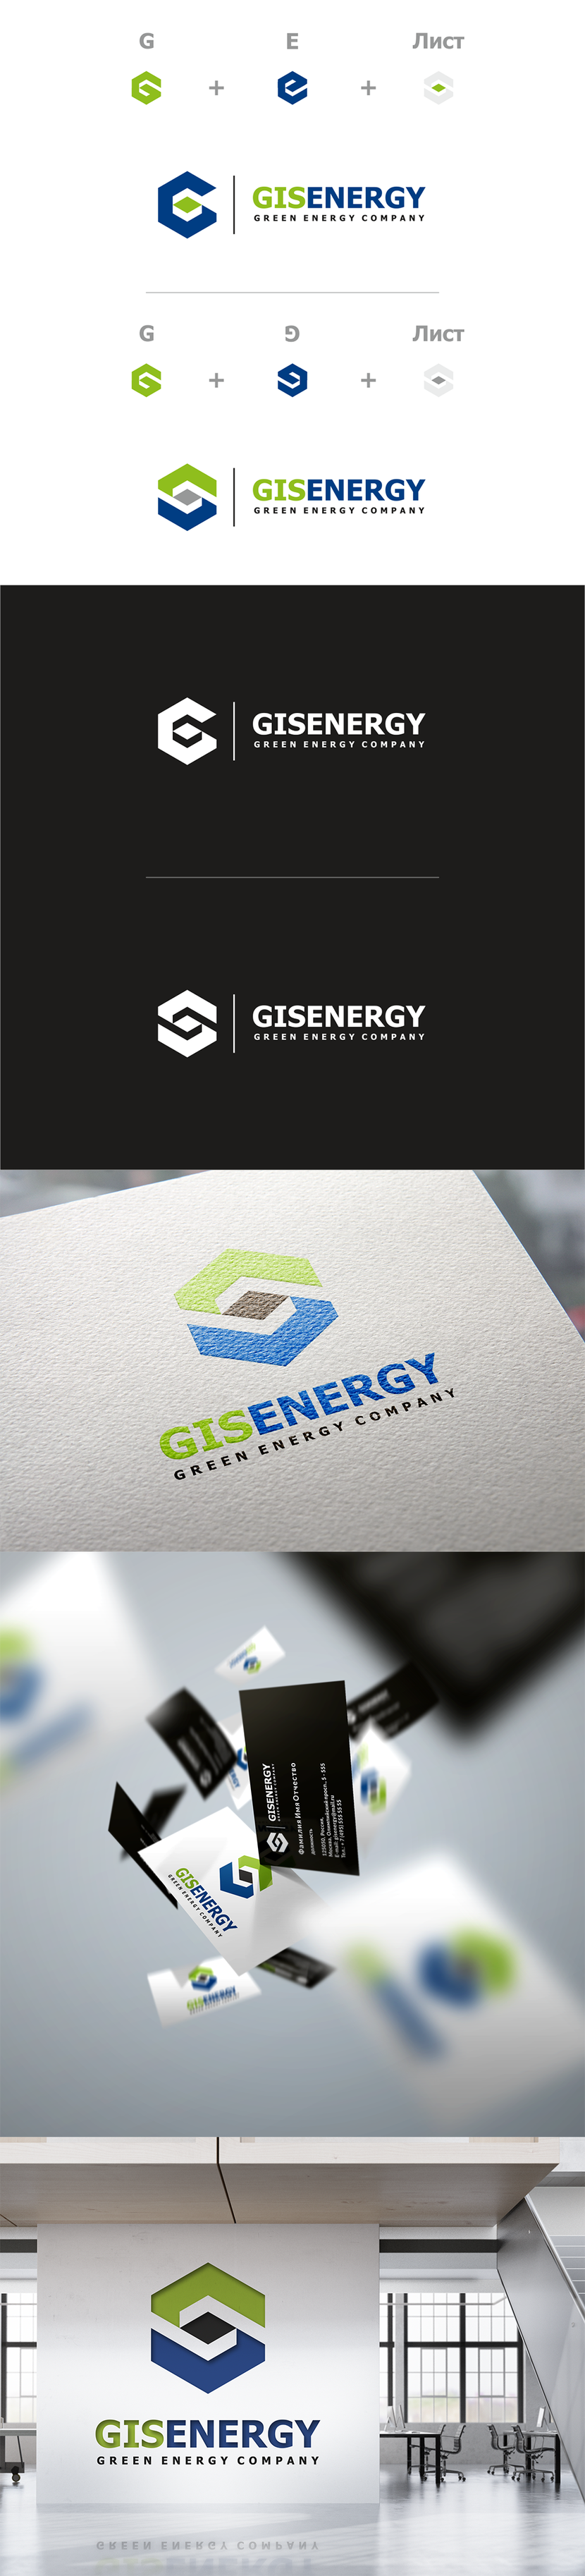 Именно это и дает прекрасную возможность пойти одним из любых путей по созданию легенды построения знака. Например: G + лист, E + лист, G + E +  лист,  G + G + лист и т.д. ... - Разработка логотипа и ФС для компании в области зеленой энергетики